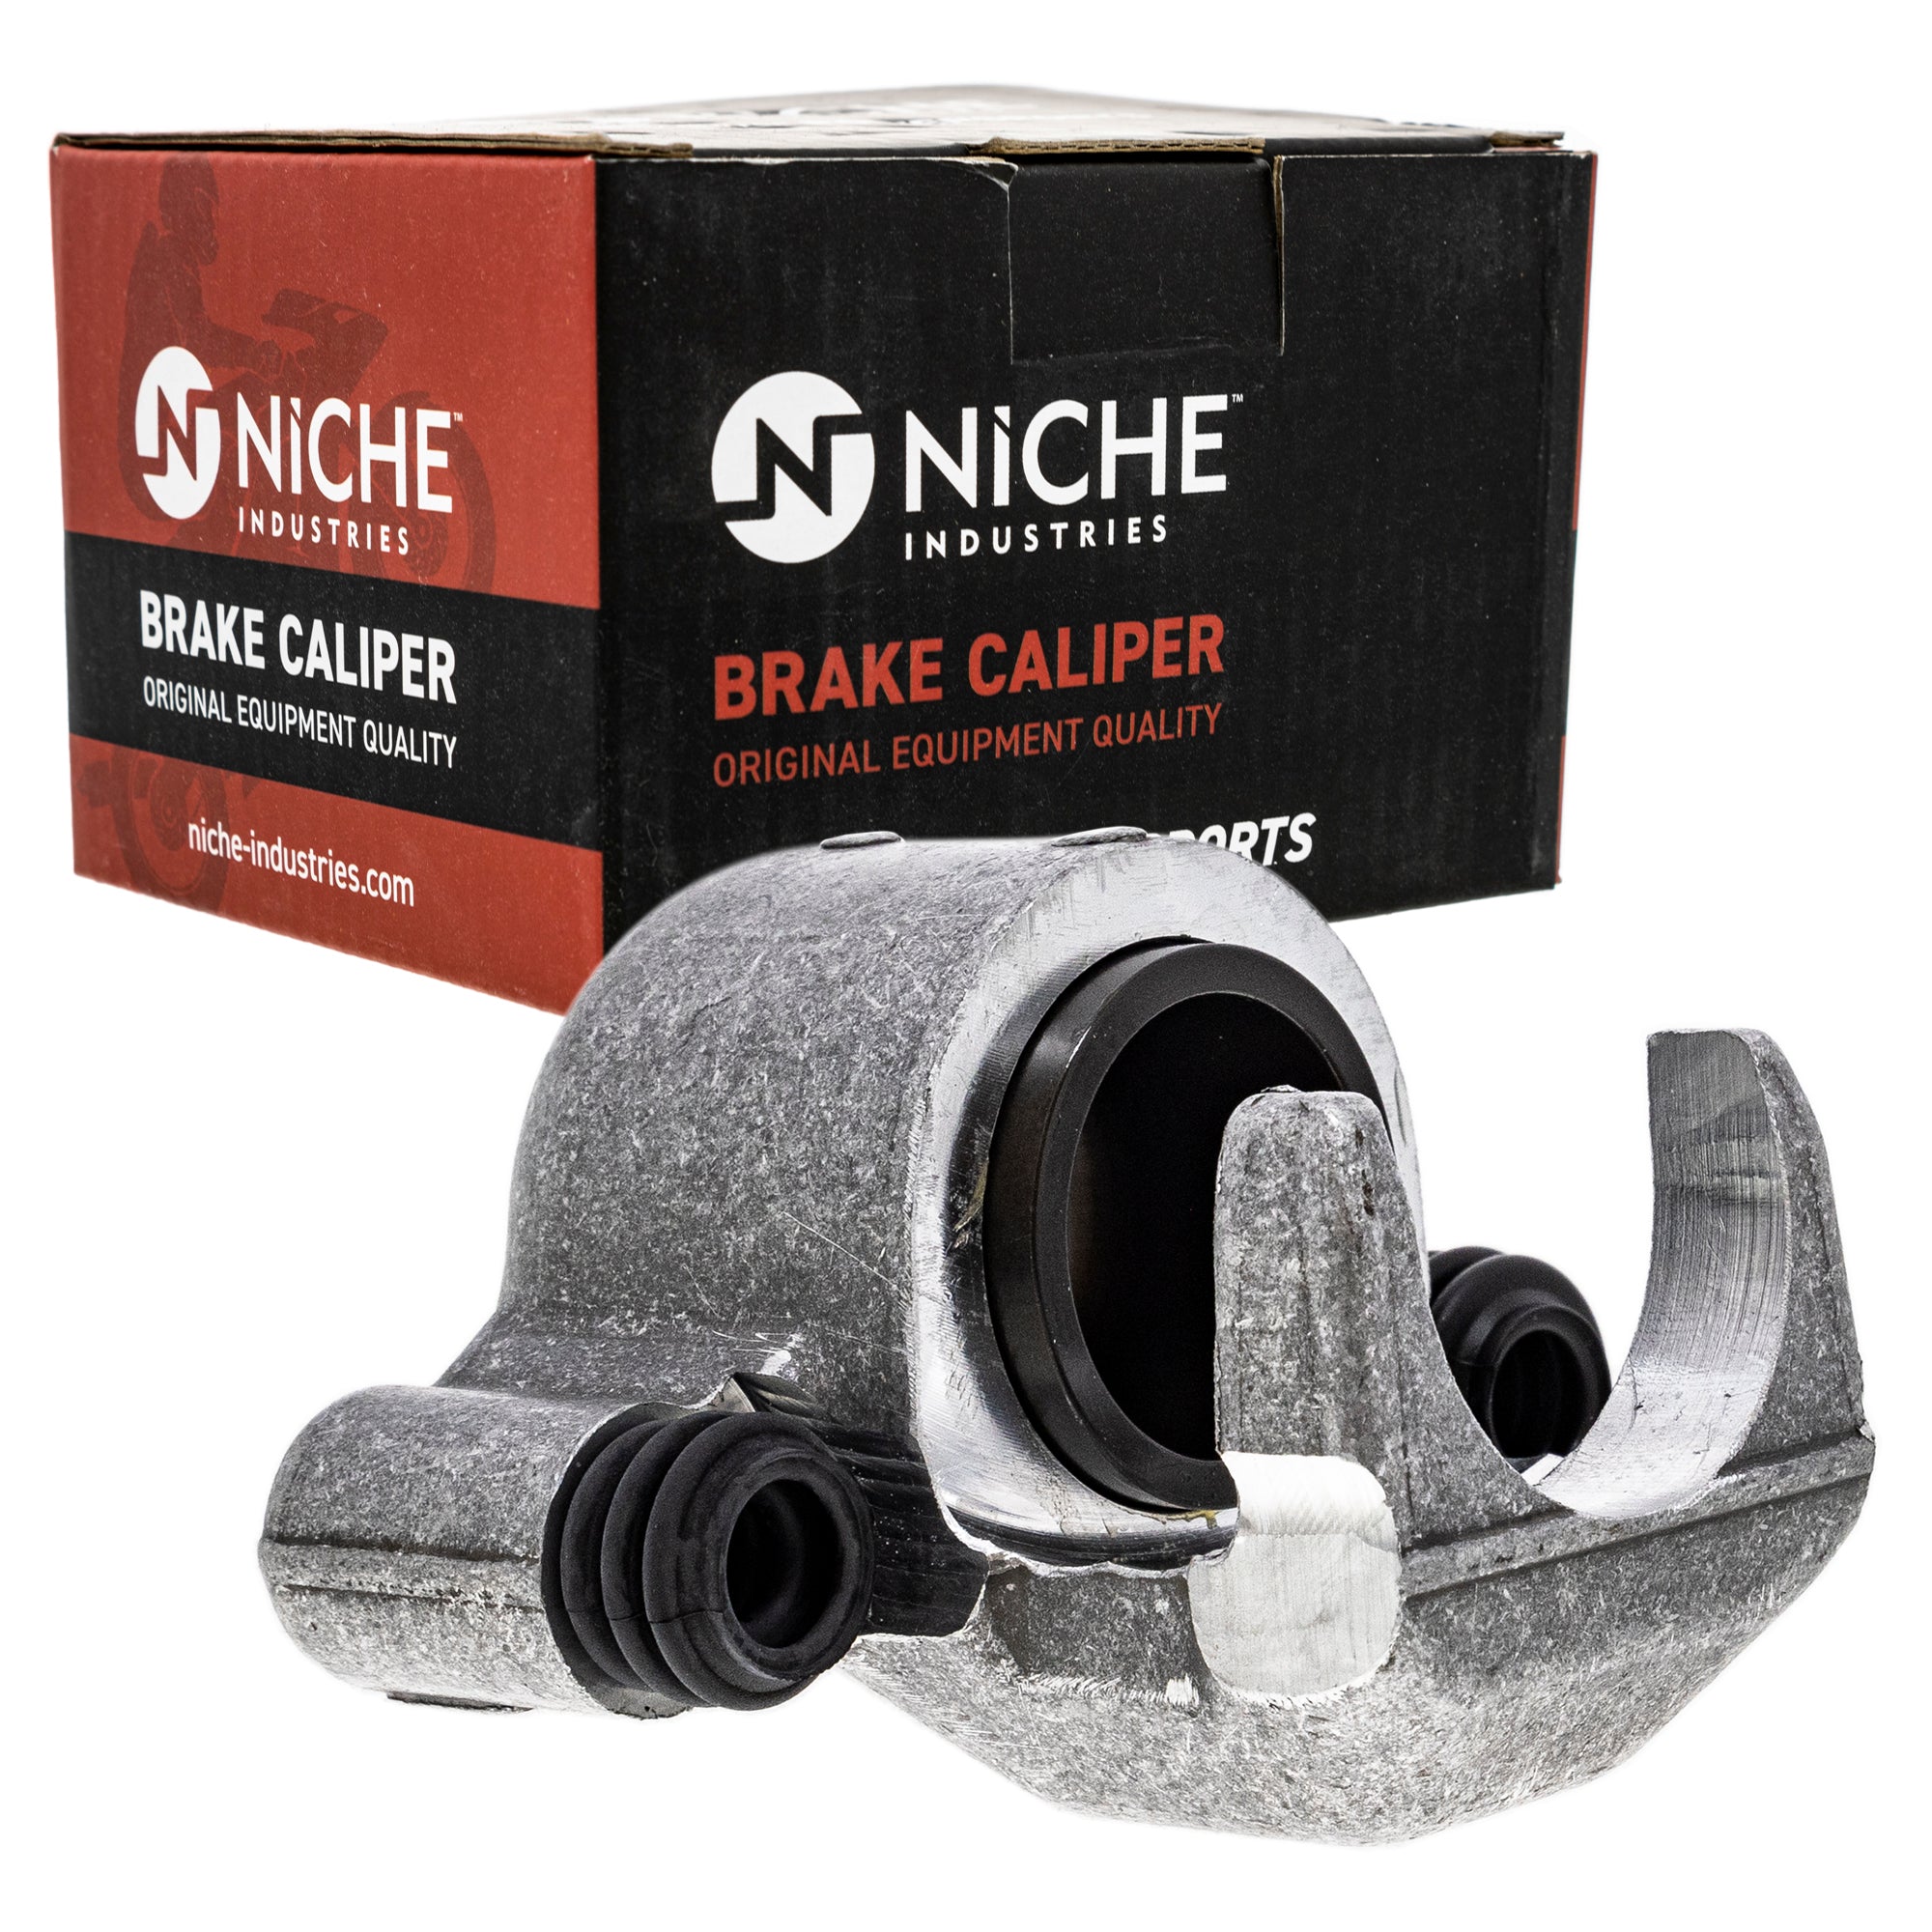 NICHE MK1001011 Brake Caliper Kit